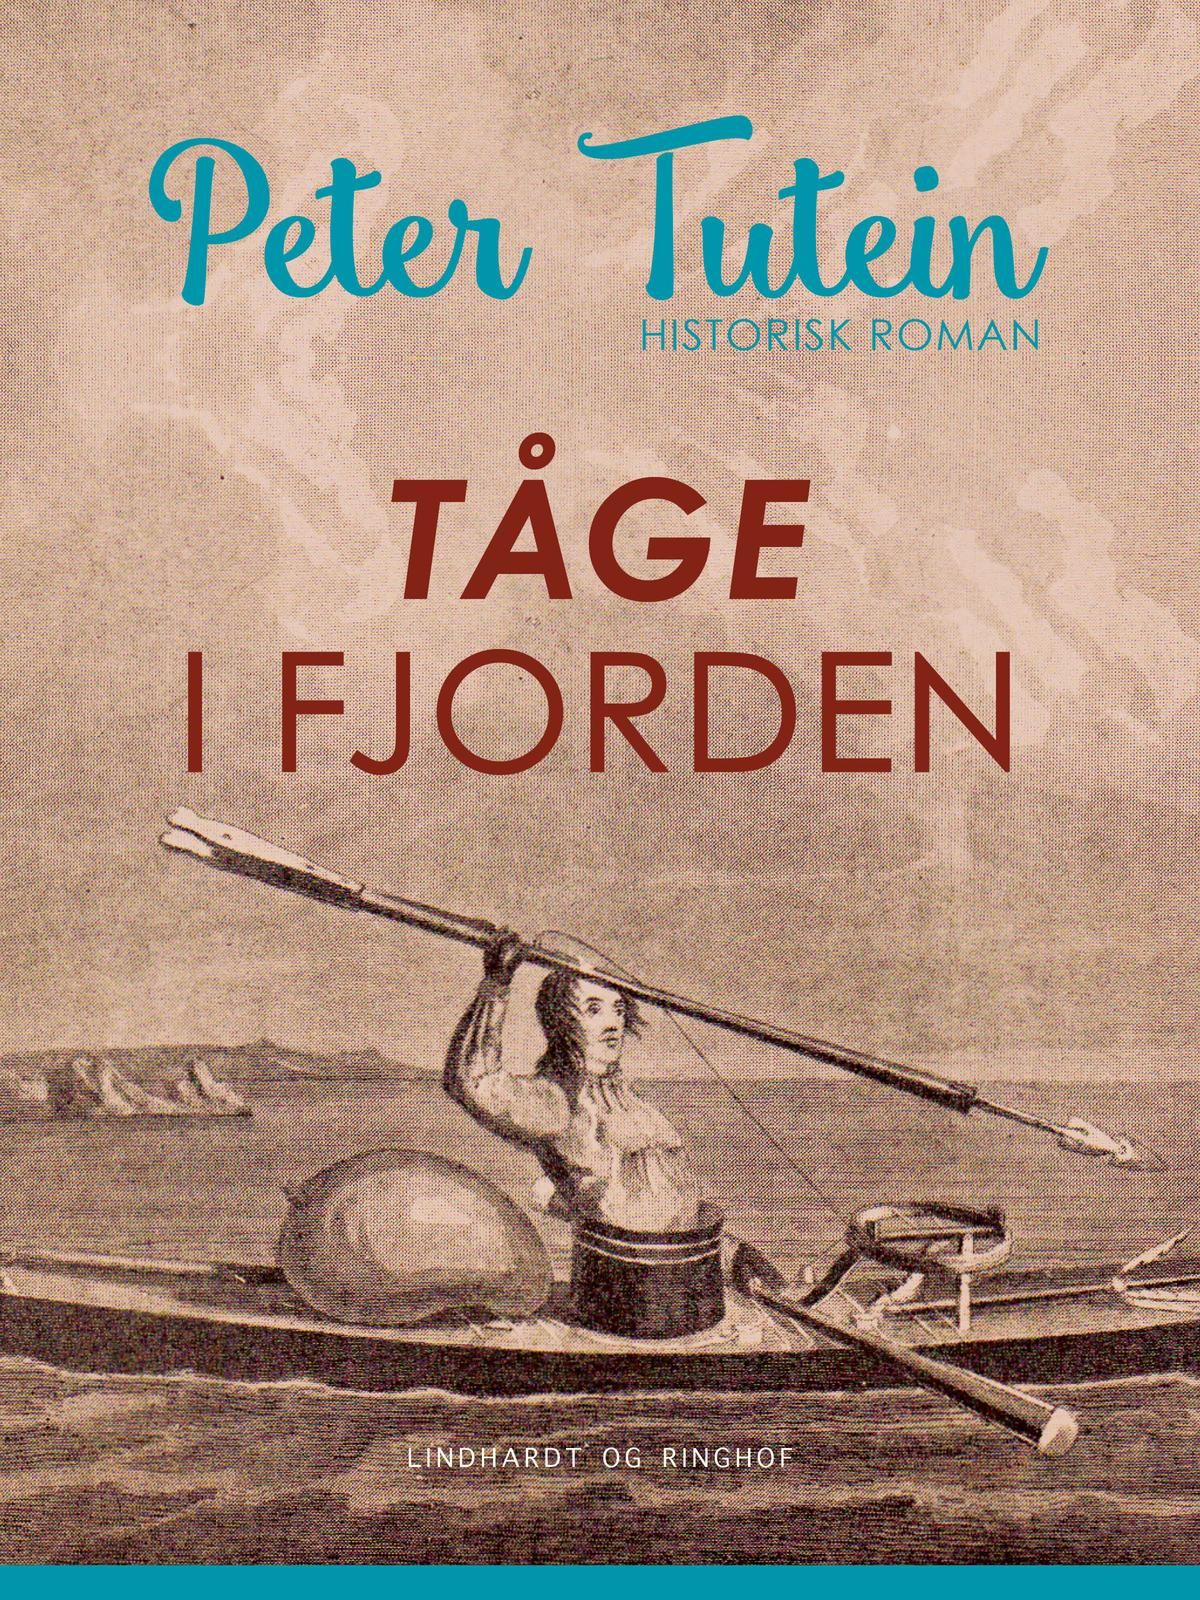 Tåge i fjorden, e-bok av Peter Tutein